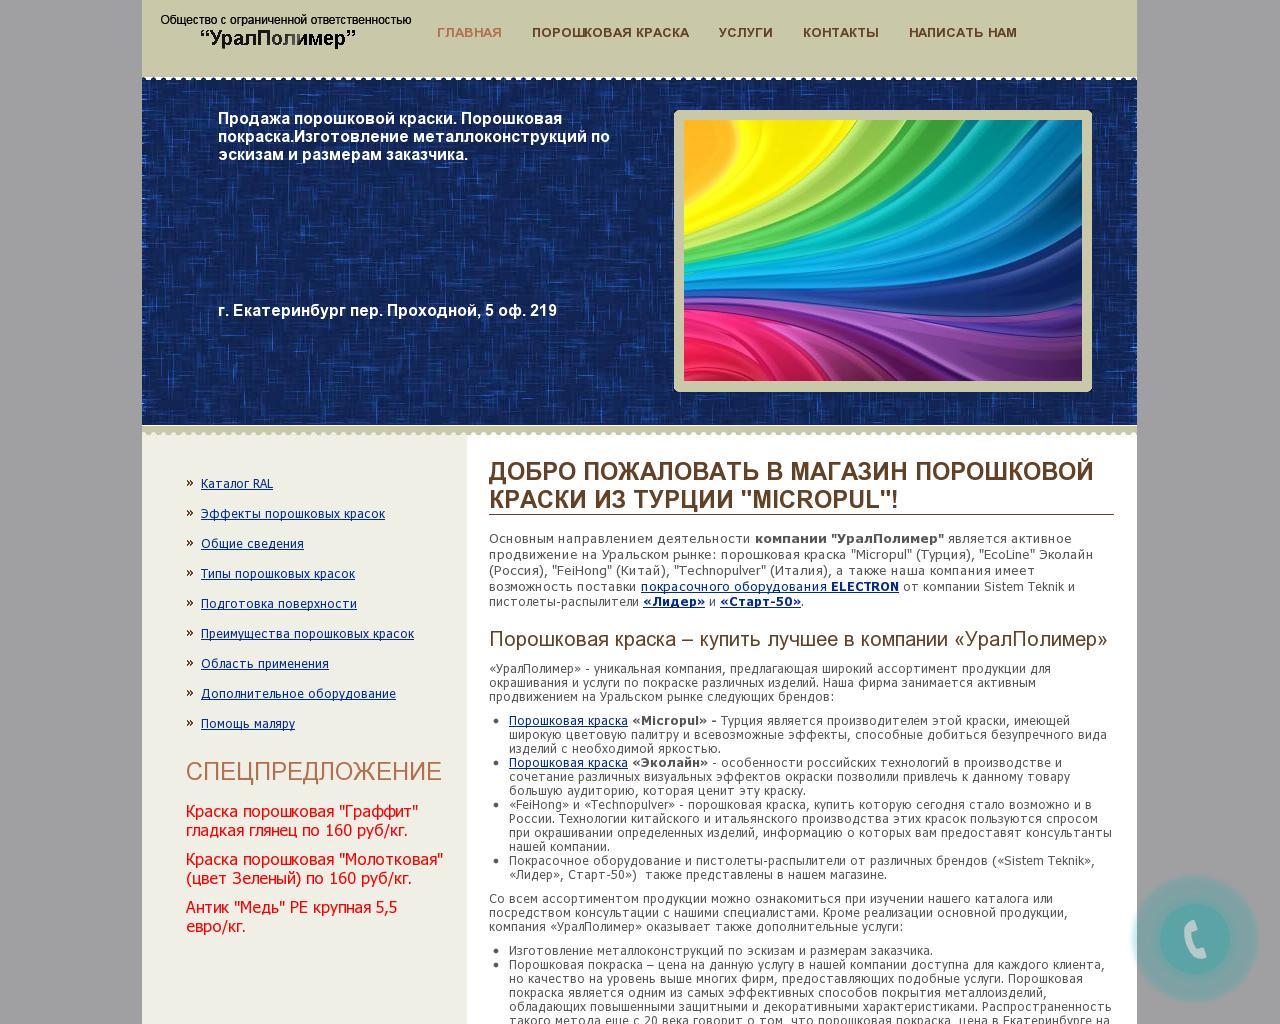 Изображение сайта uralpolymer.ru в разрешении 1280x1024